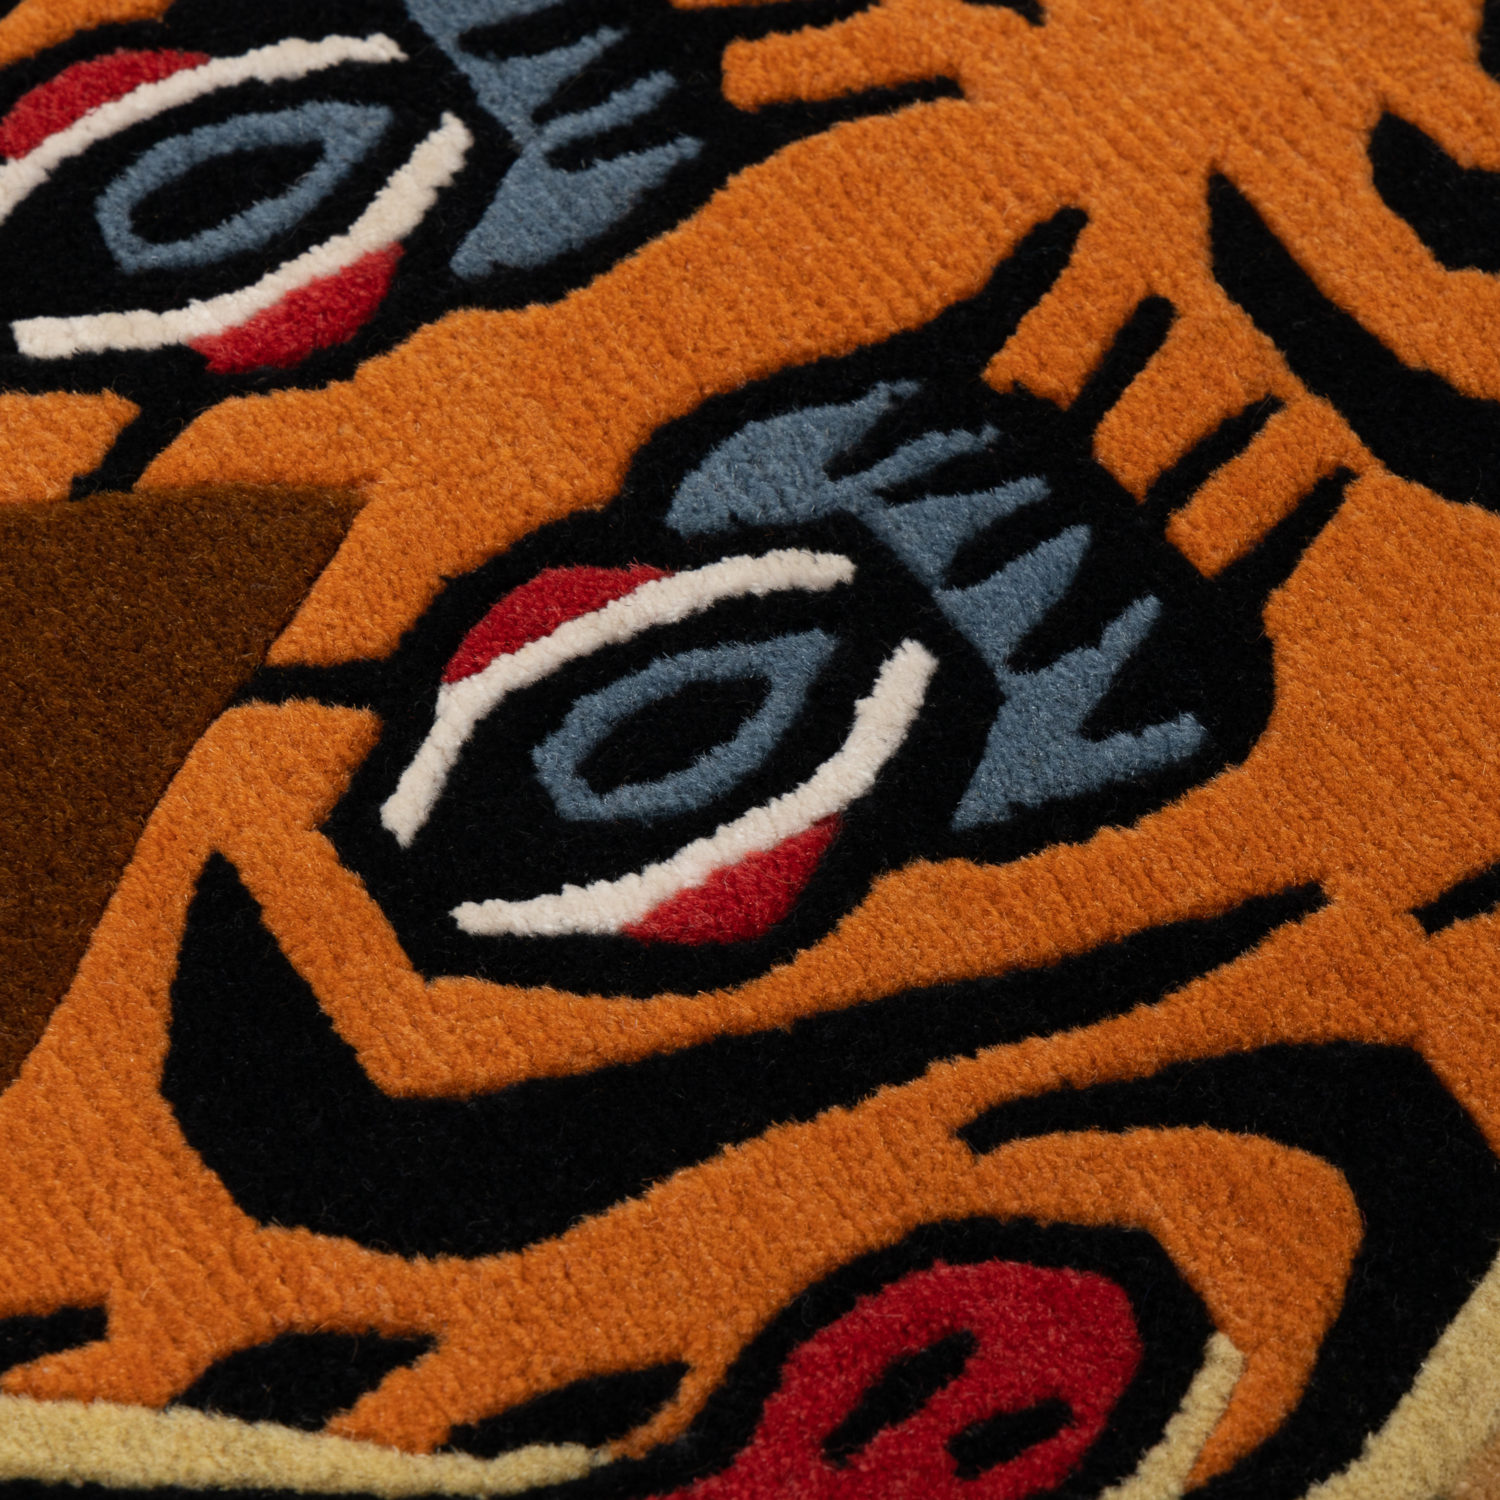 A remarkable traditional Tibetan rug